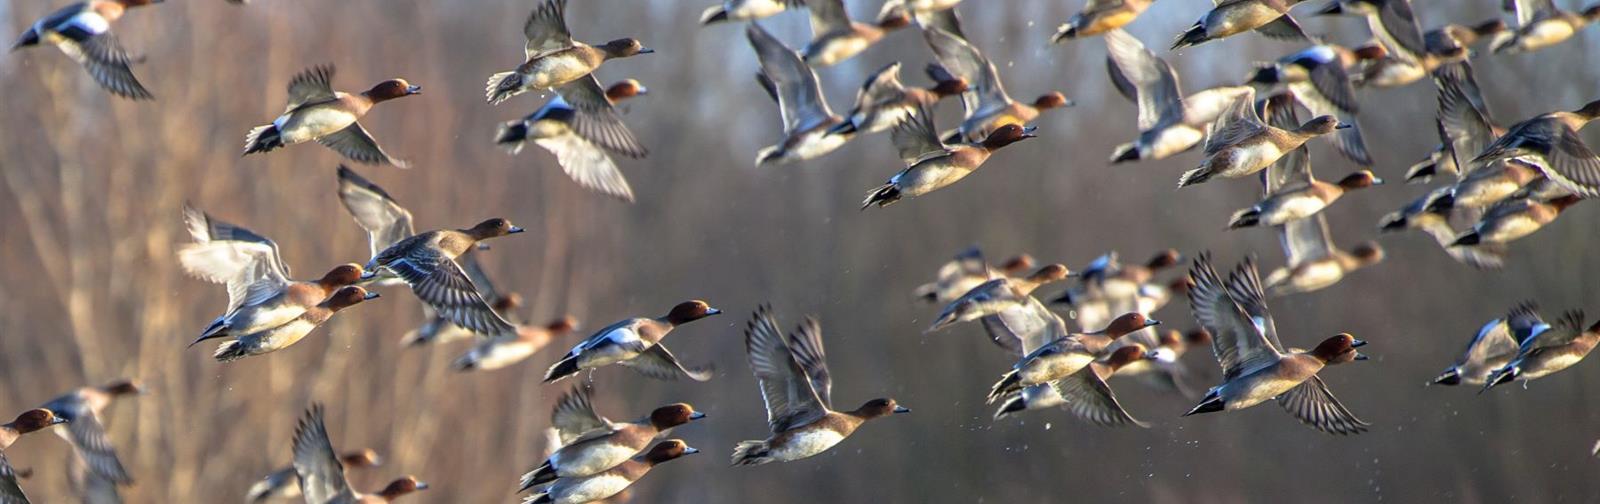 a-flock-of-ducks